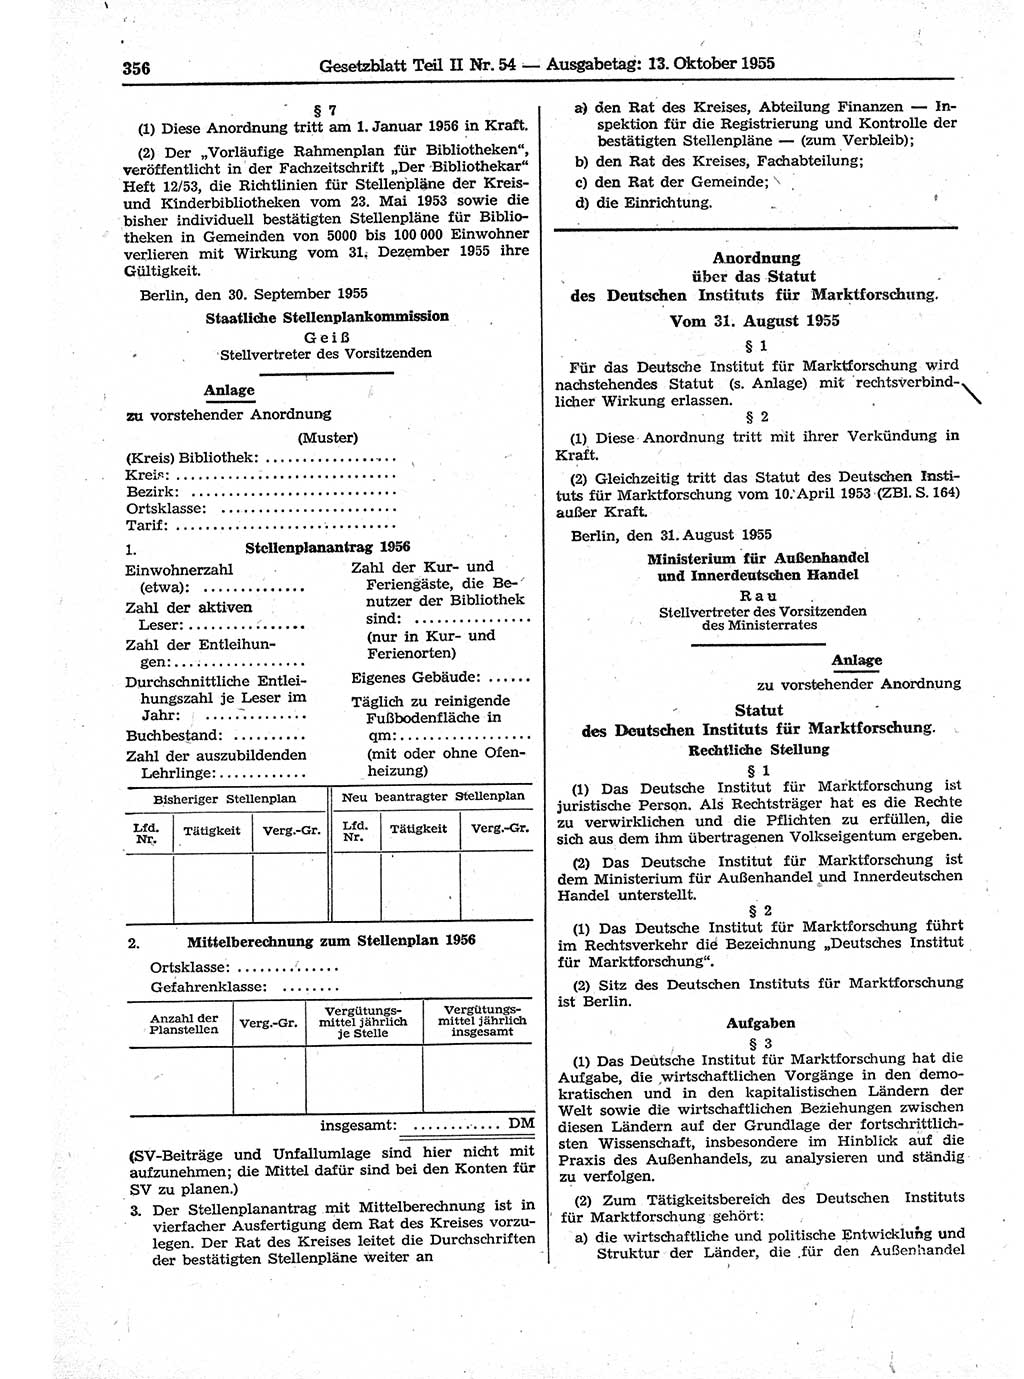 Gesetzblatt (GBl.) der Deutschen Demokratischen Republik (DDR) Teil ⅠⅠ 1955, Seite 356 (GBl. DDR ⅠⅠ 1955, S. 356)